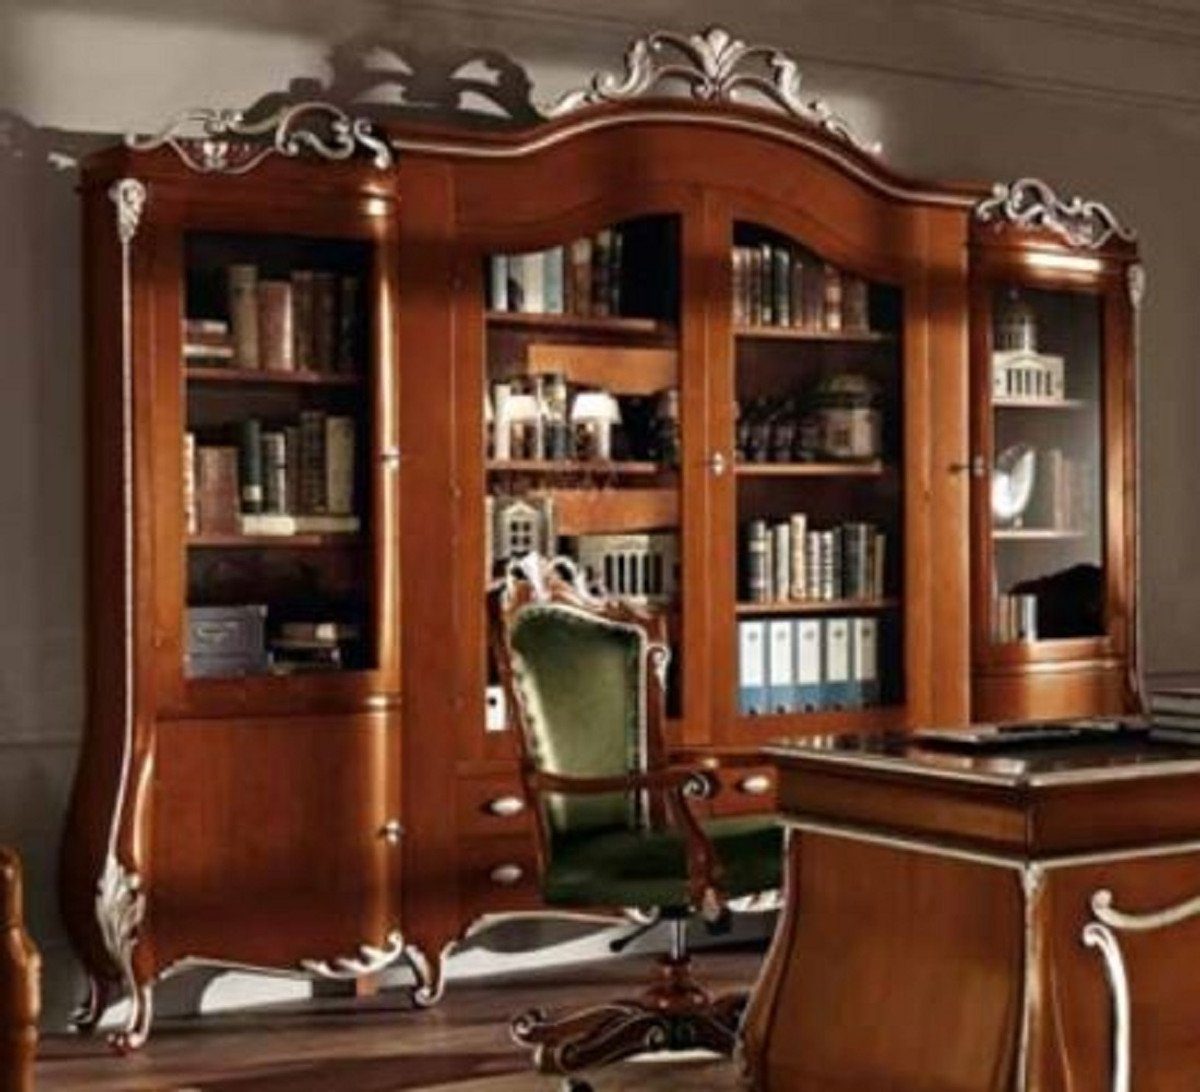 Casa Padrino Stauraumschrank Luxus Barock Schrank mit 4 Glastüren Braun / Silber - Massivholz Regalschrank - Bücherschrank - Wohnzimmerschrank - Büroschrank - Barock Möbel - Luxus Qualität - Made in Italy